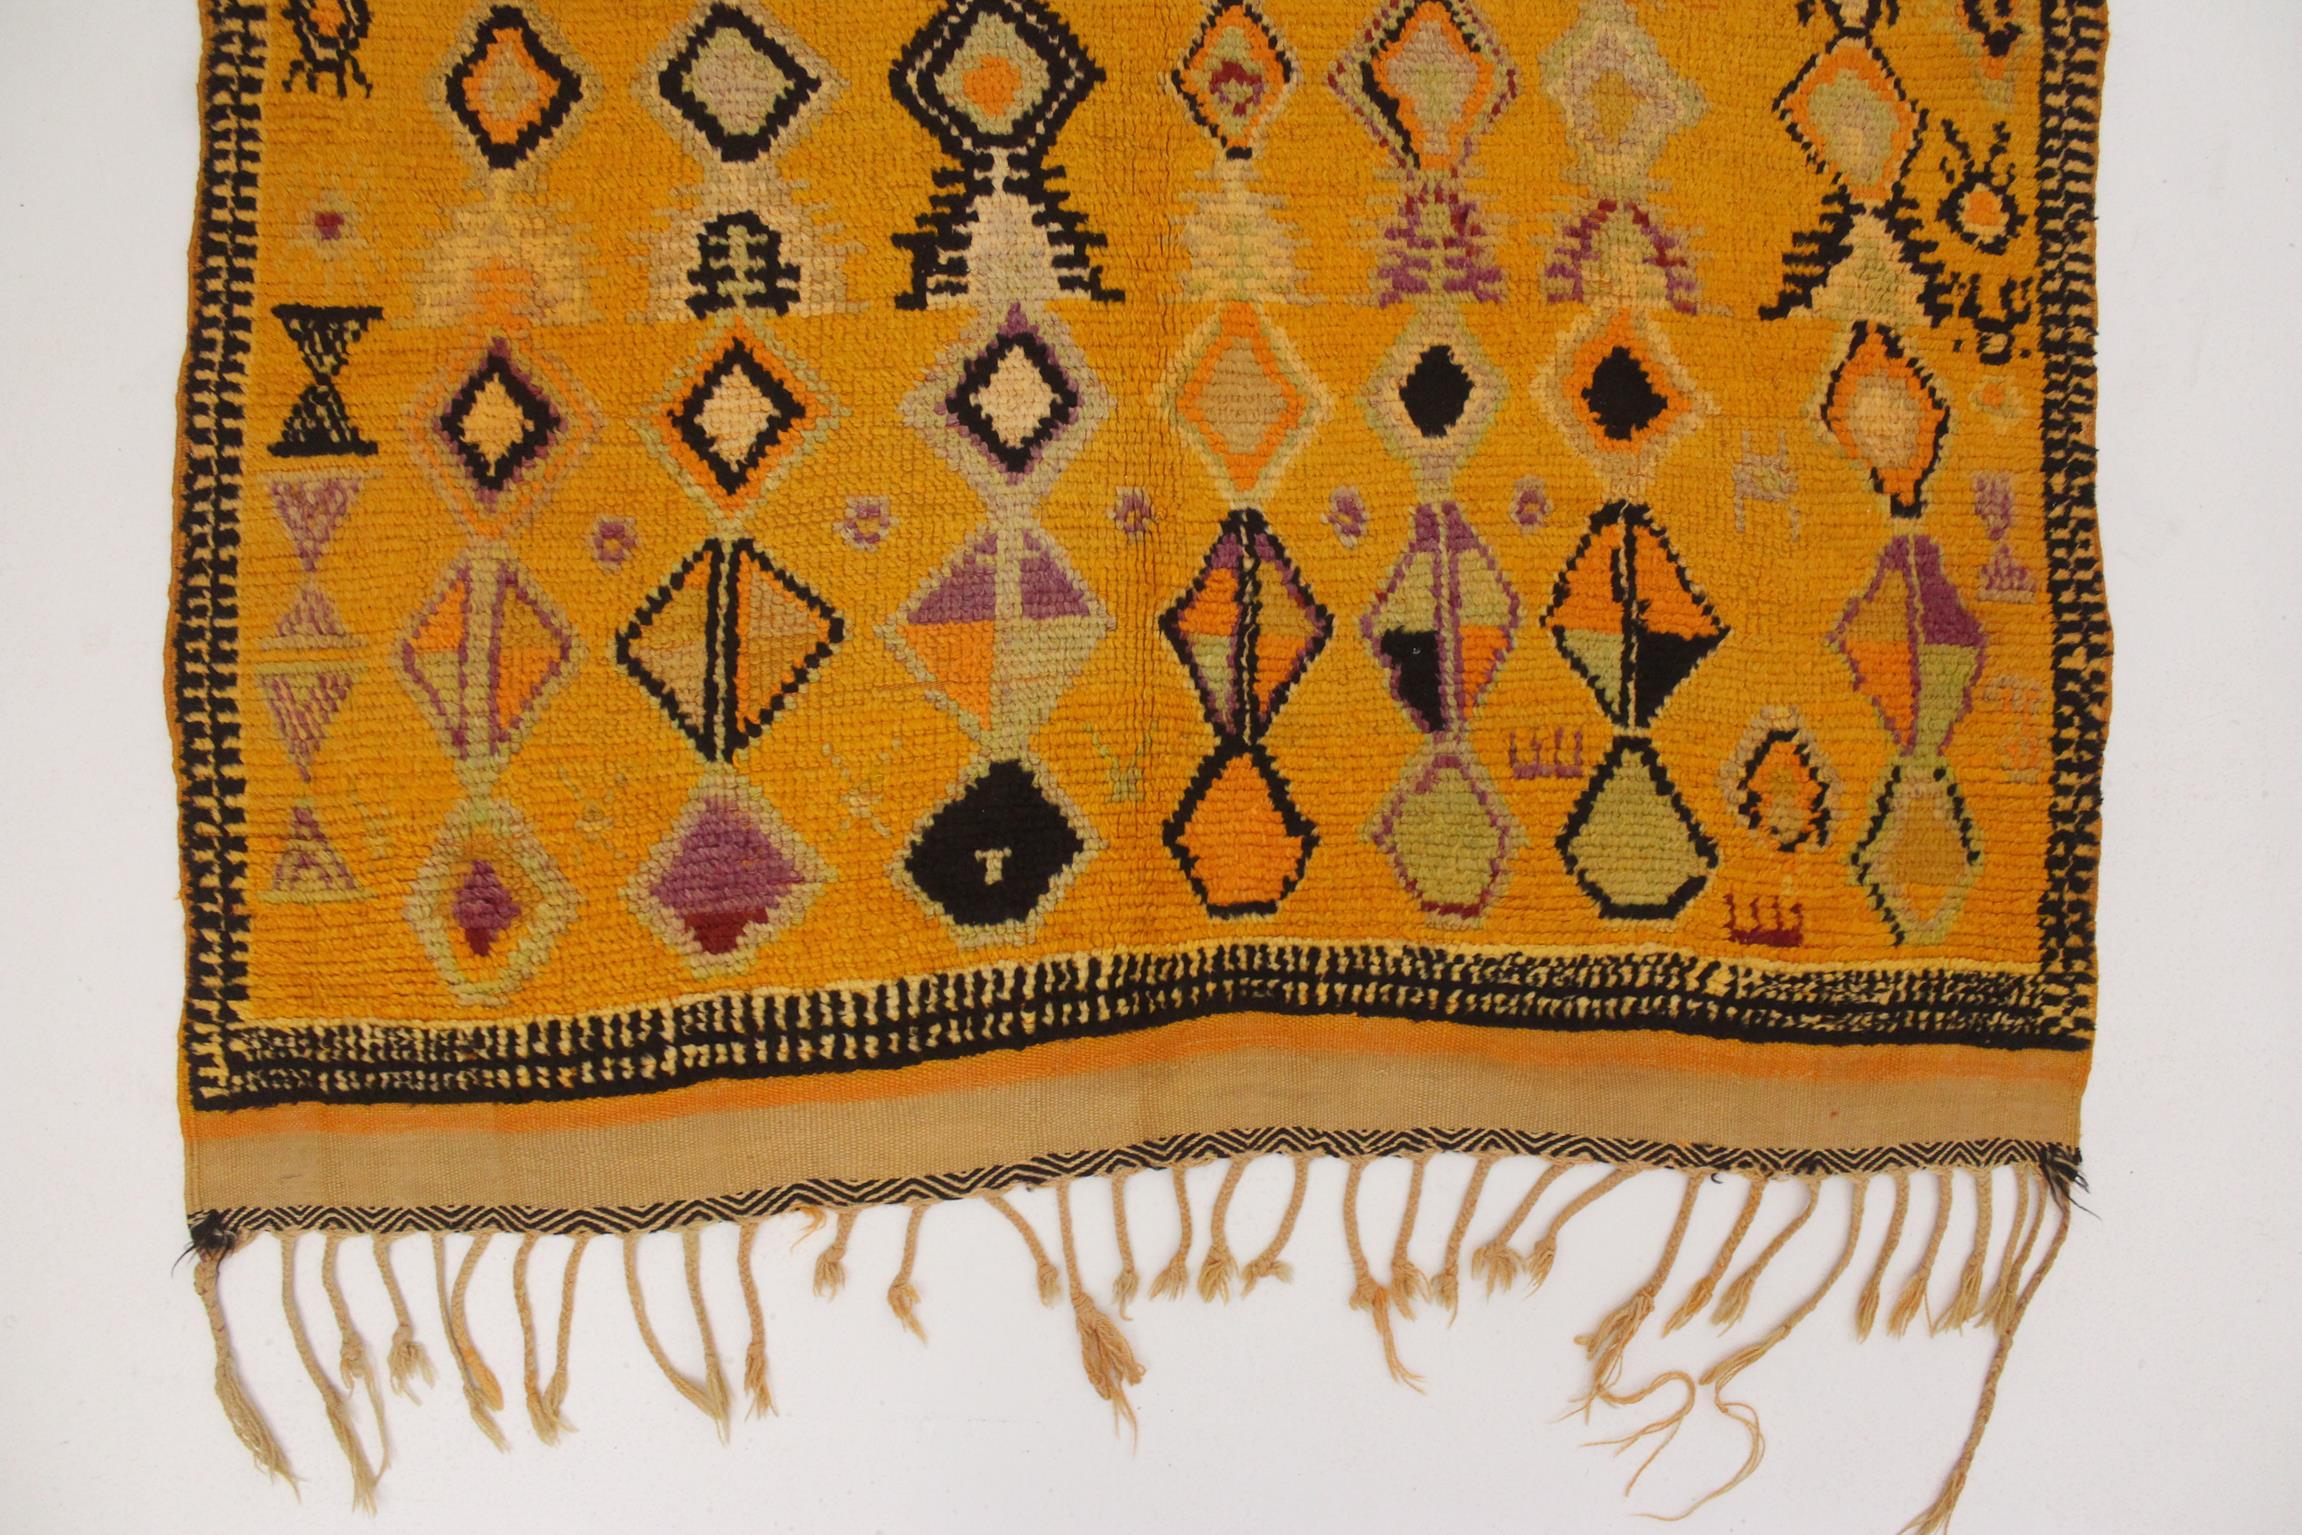 Vintage Ait Ouaouzguite rug - Yellow/purple/black - 5x12.1feet / 152x370cm For Sale 3